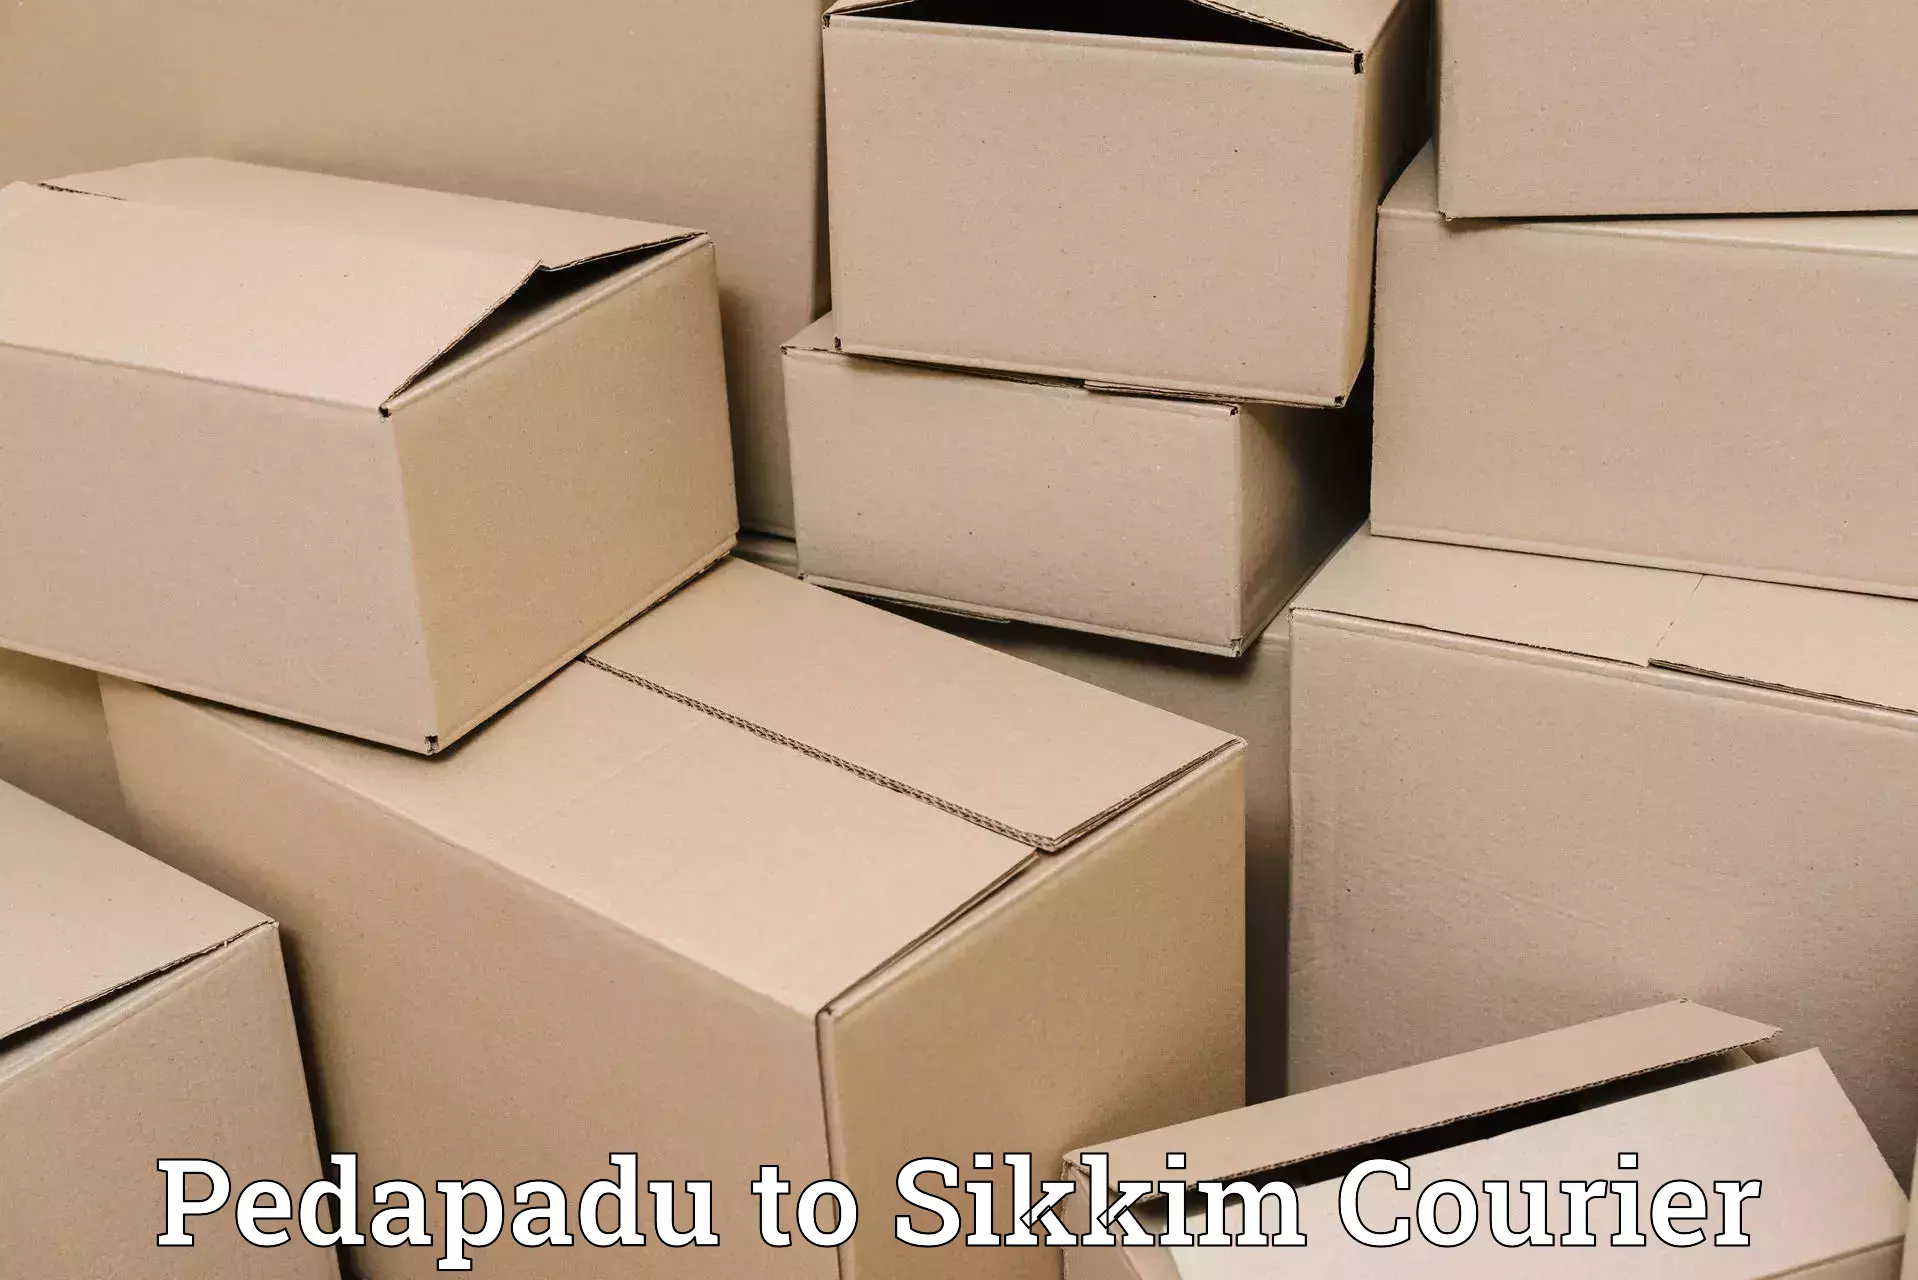 Express courier facilities Pedapadu to Mangan